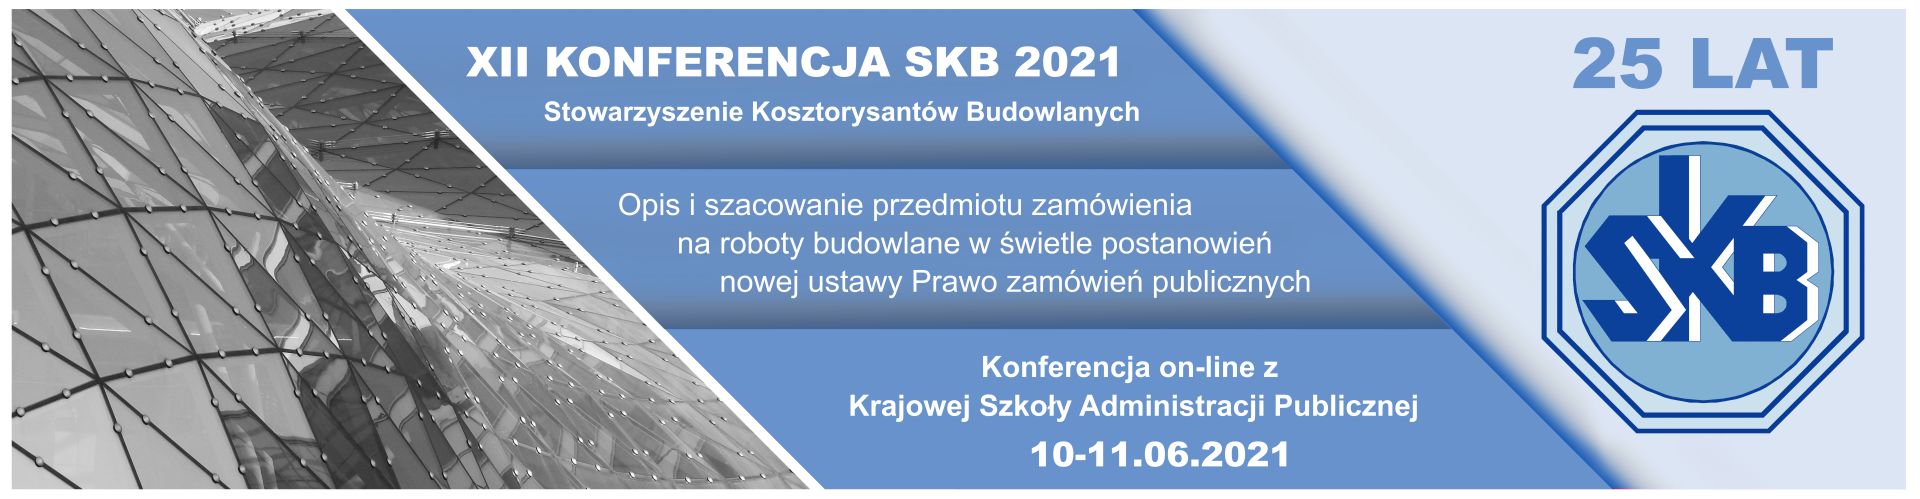 XII Konferencja SKB 2021. Temat konferencji: Opis i szacowanie przedmiotu zamówienia na roboty budowlane w świetle postanowień nowej ustawy Prawo zamówień publicznych